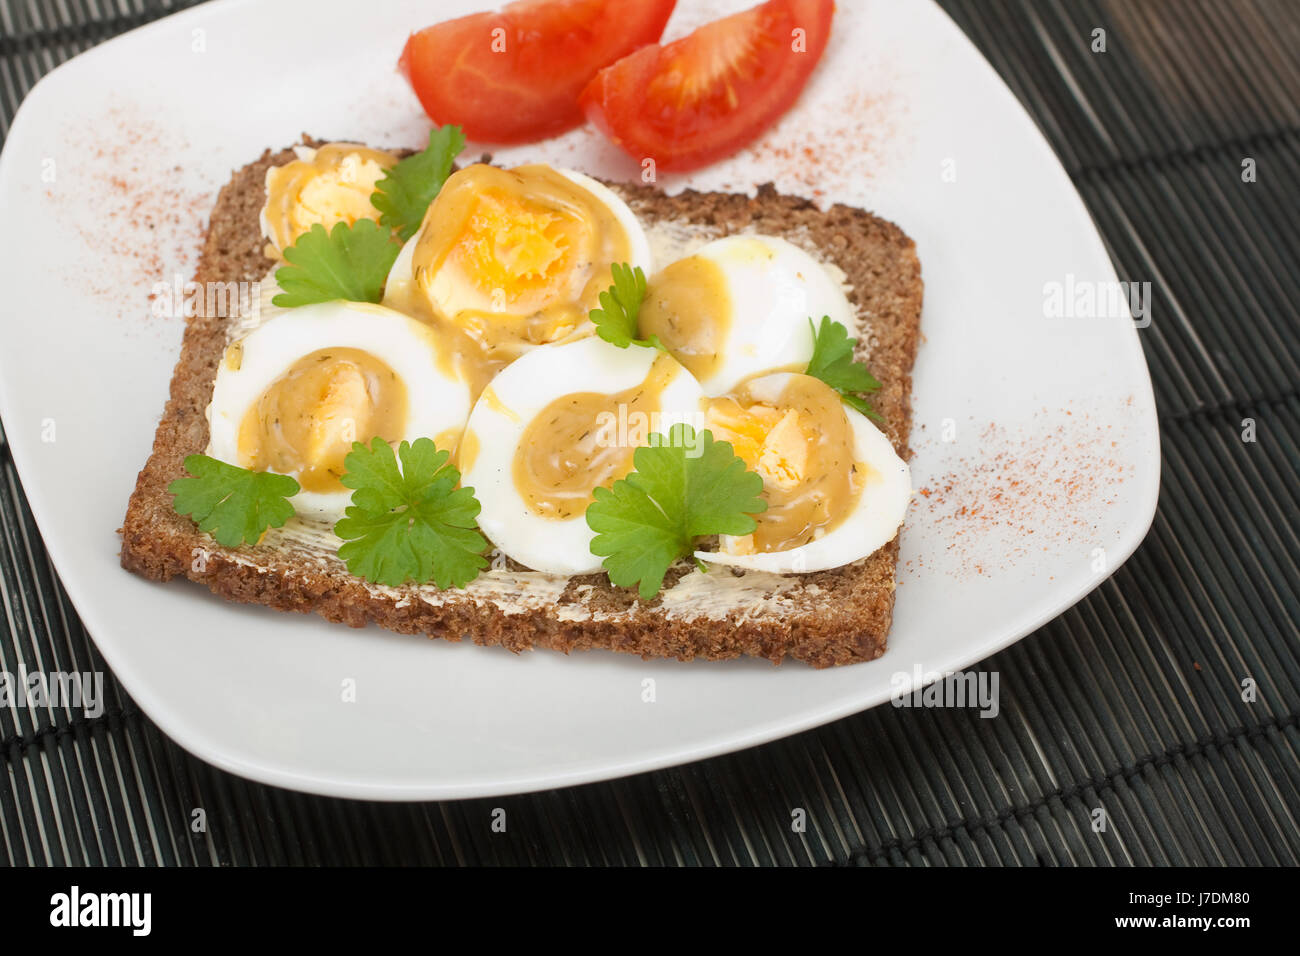 Snack Zeit Essen Nahrungsmittel Brot Ei Eiern Abendessen Snack Snack Zeit Essen Nahrungsmittel Stockfotografie Alamy